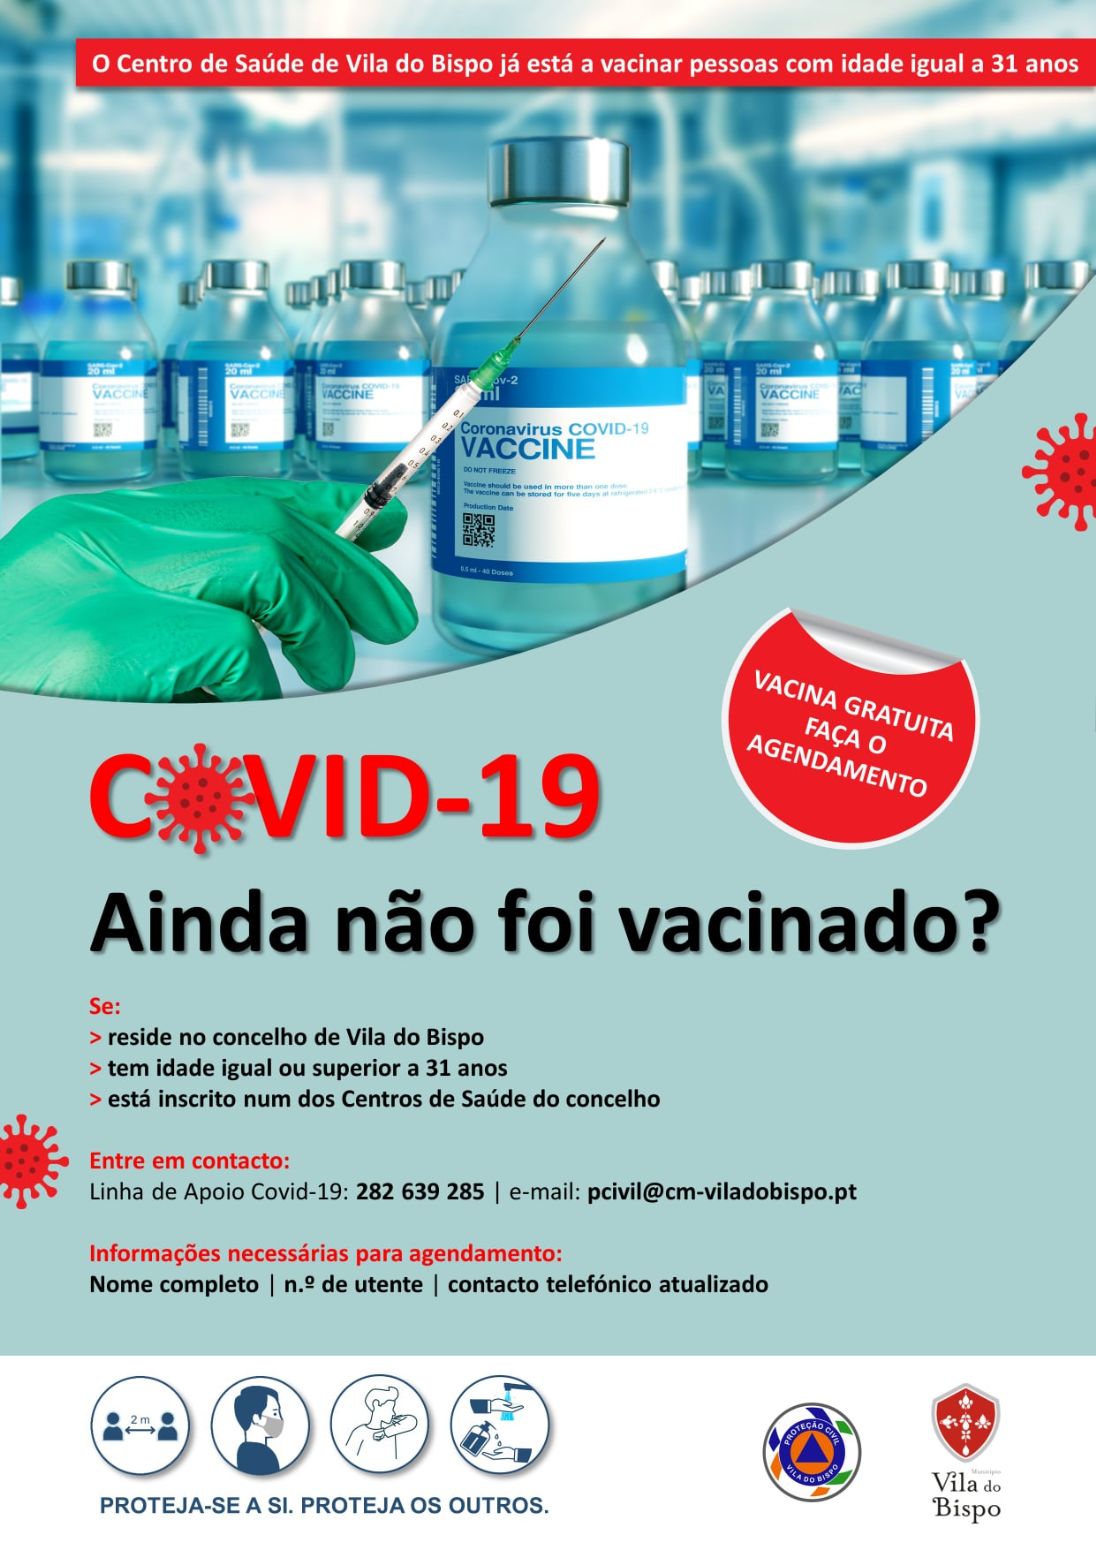 Covid-19: Centro de Saúde de Vila do Bispo já está a vacinar pessoas com idade igual a 31 anos